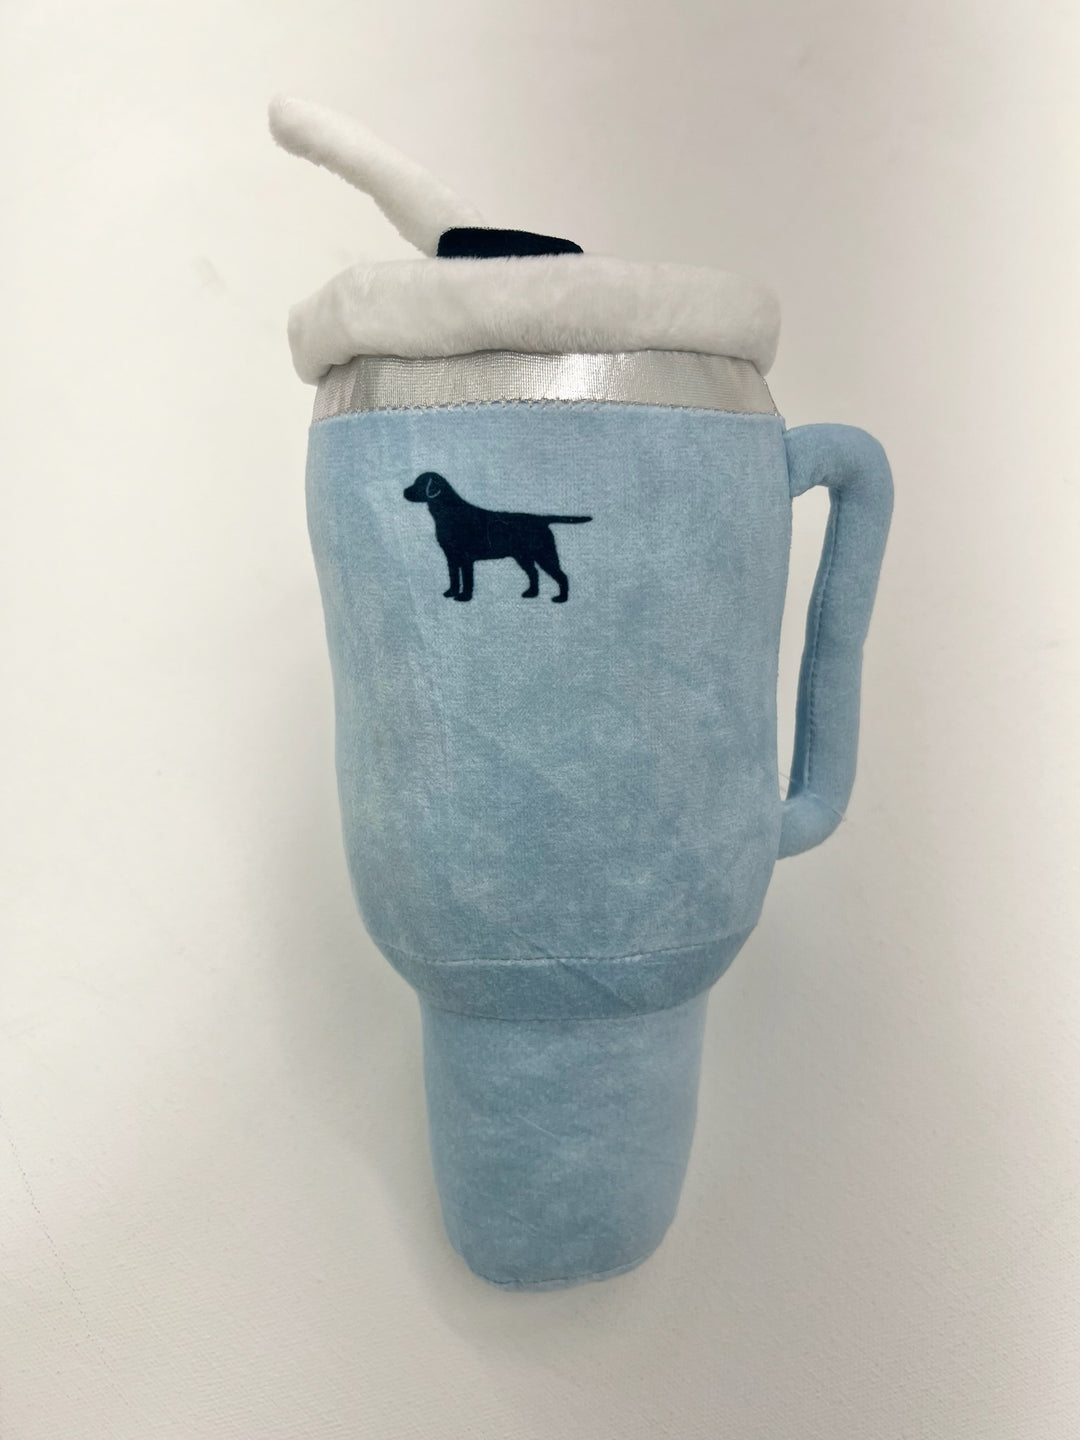 Plush Tumbler Cup Dog Toy